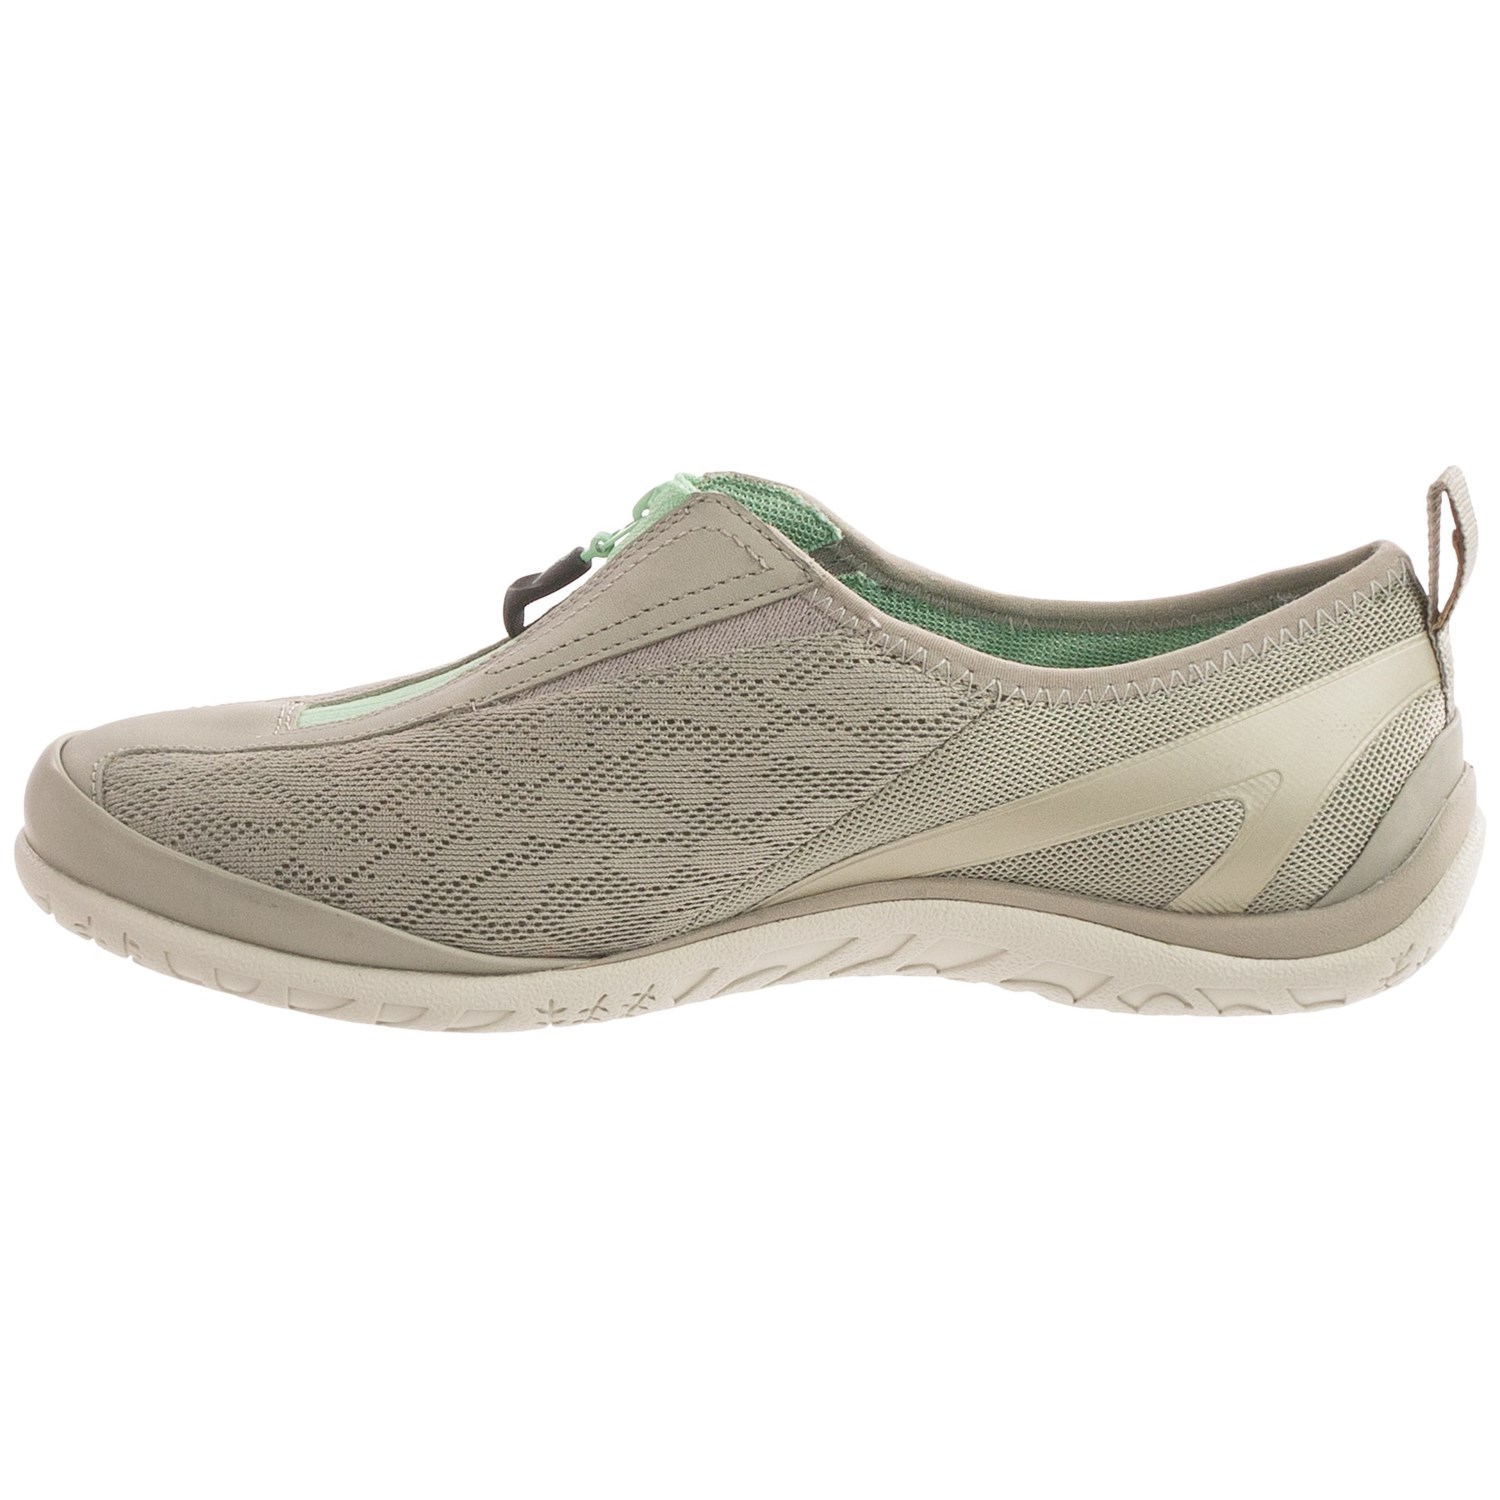 Merrell Enlighten Glitz Breeze Shoes (For Women) 9224C - Save 55%